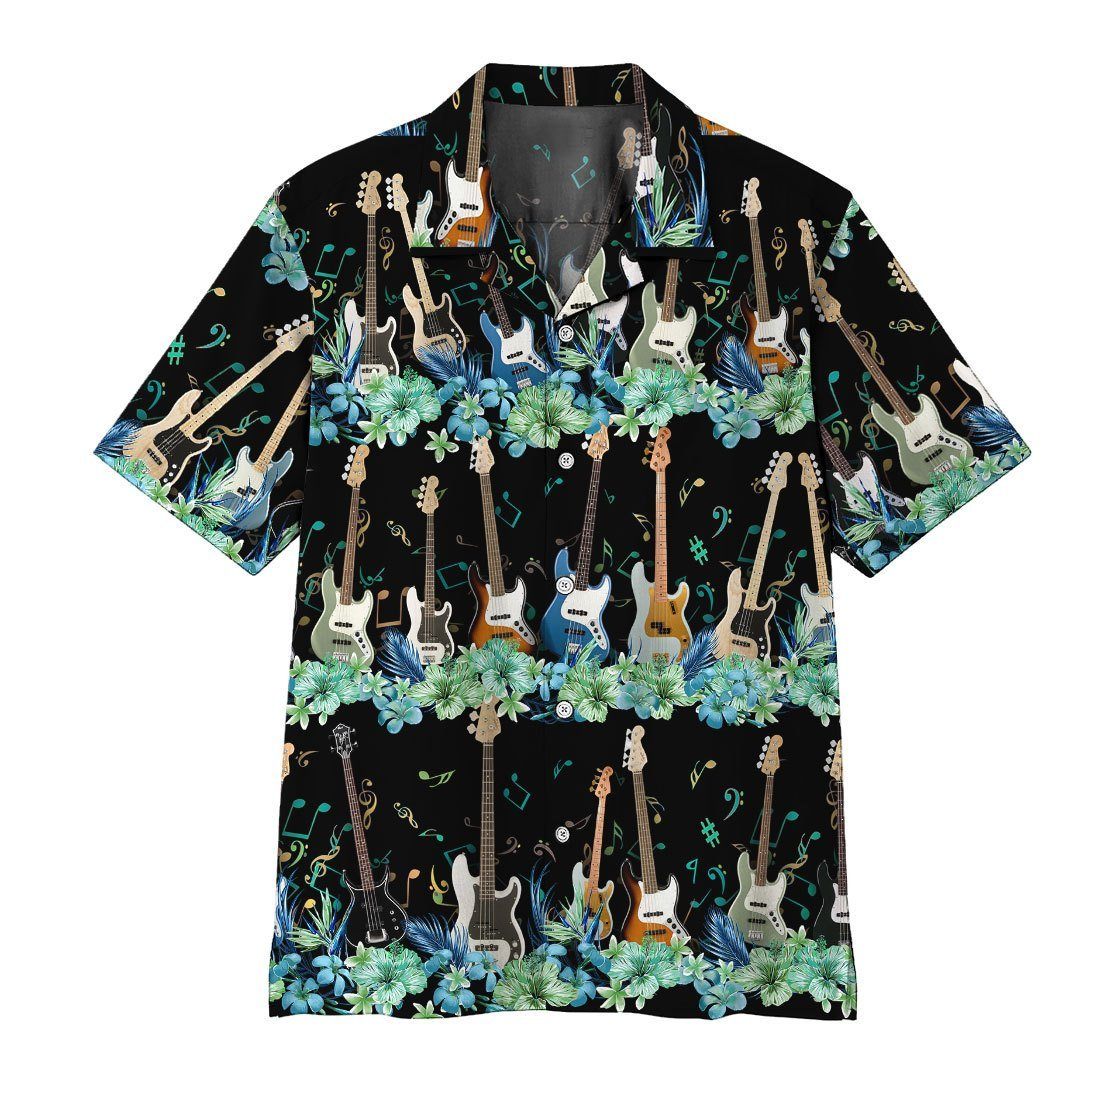 Gearhumans 3D Bass Guitar Hawaii Shirt ZZ13045 Hawai Shirt Short Sleeve Shirt S 